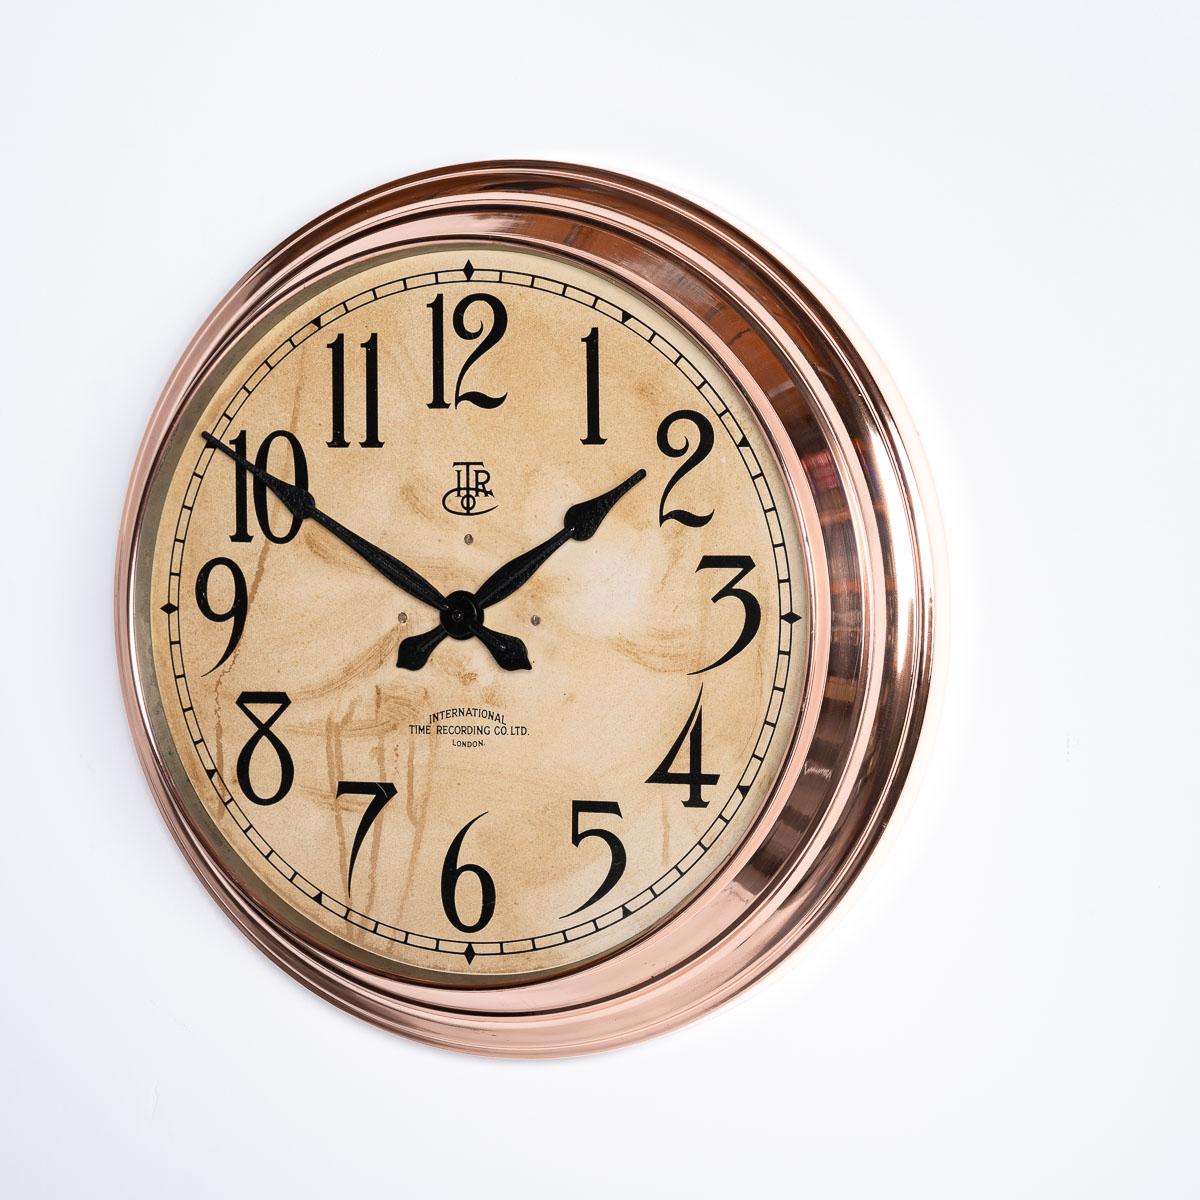 Ein schönes und seltenes Exemplar des Uhrenherstellers International Time Recording Co Ltd um 1930.

Diese Industrieuhr mit Kupfergehäuse befand sich ursprünglich in einer Schuhfabrik in Leicester, England, und wurde von einem Arbeiter entfernt, als